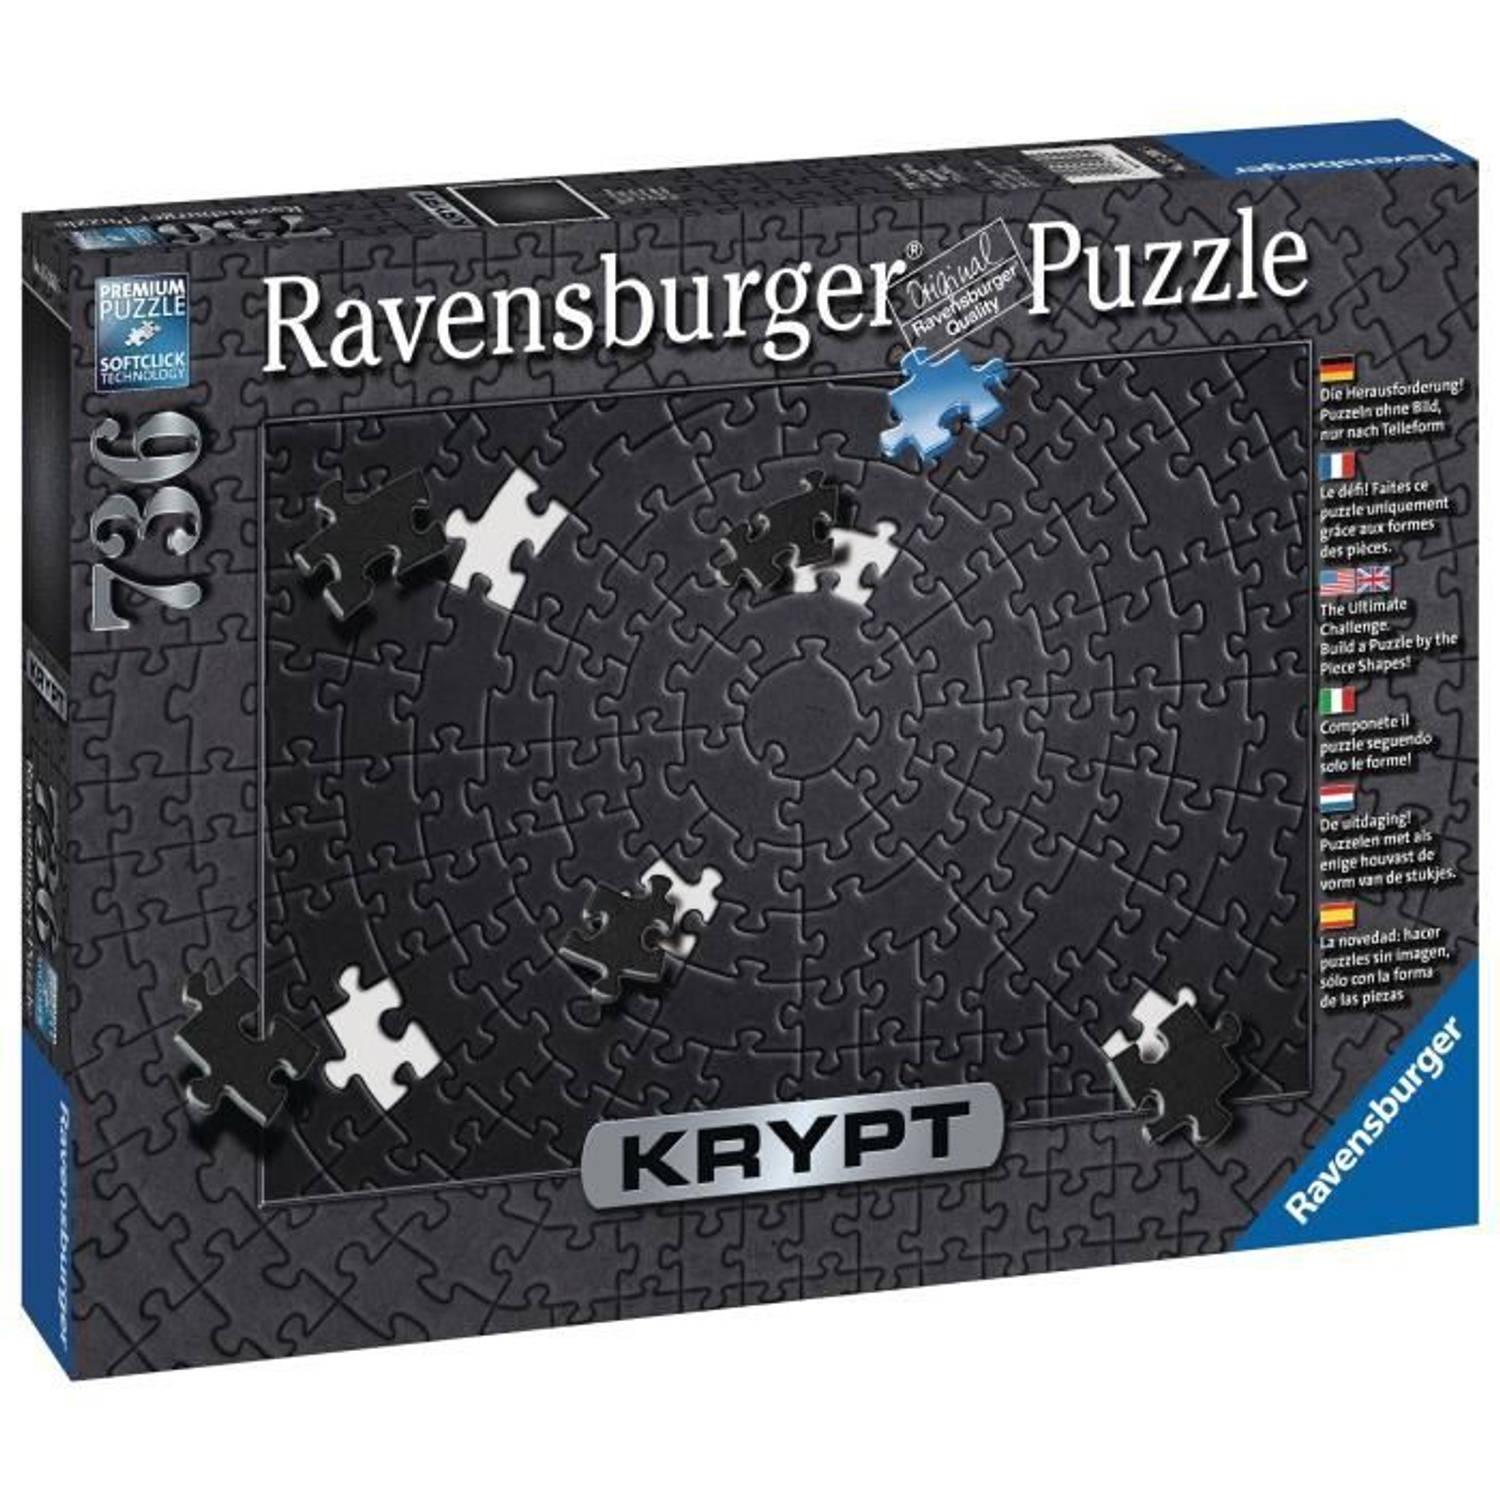 Ravensburger puzzel Krypt black